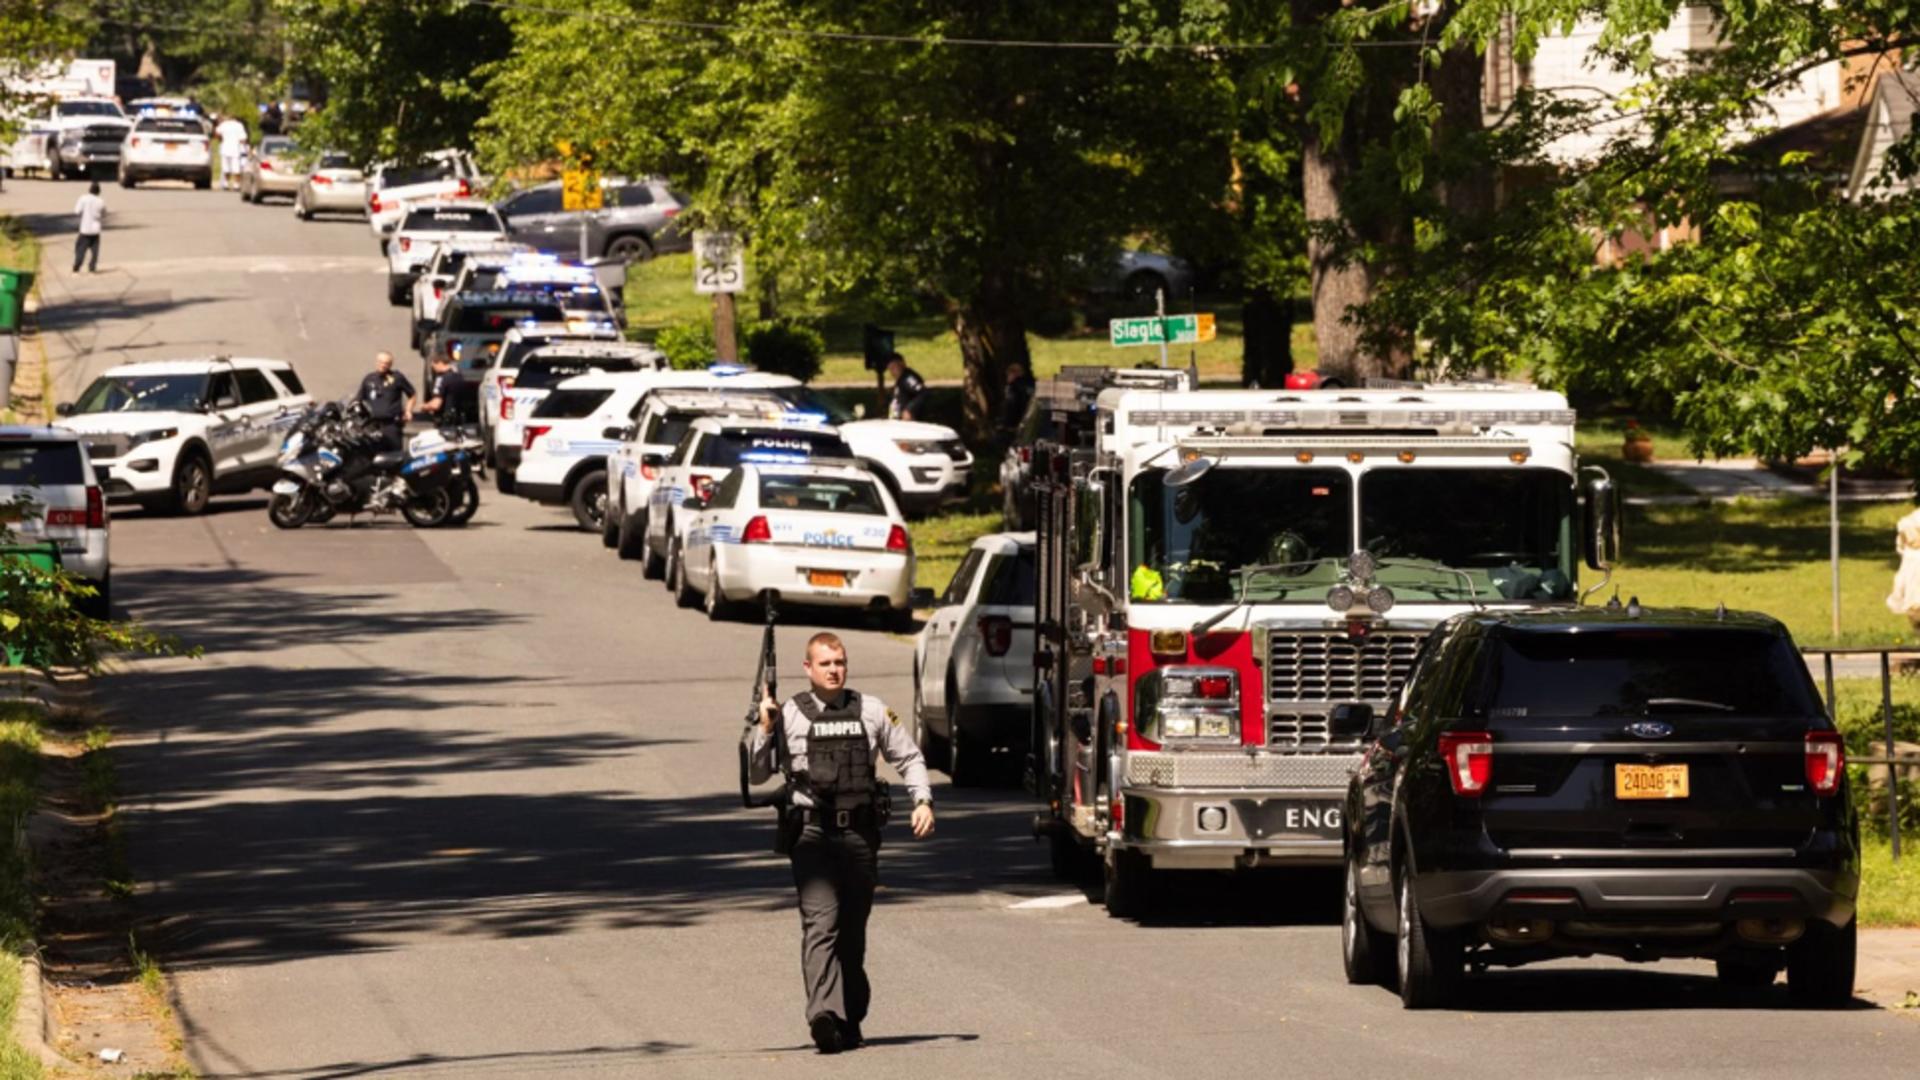 Schimb de focuri în plină zi, în Carolina de Nord: 4 poliţişti au fost ucişi și alți 4 răniți. Poliția a arestat 2 suspecți/ Profimedia